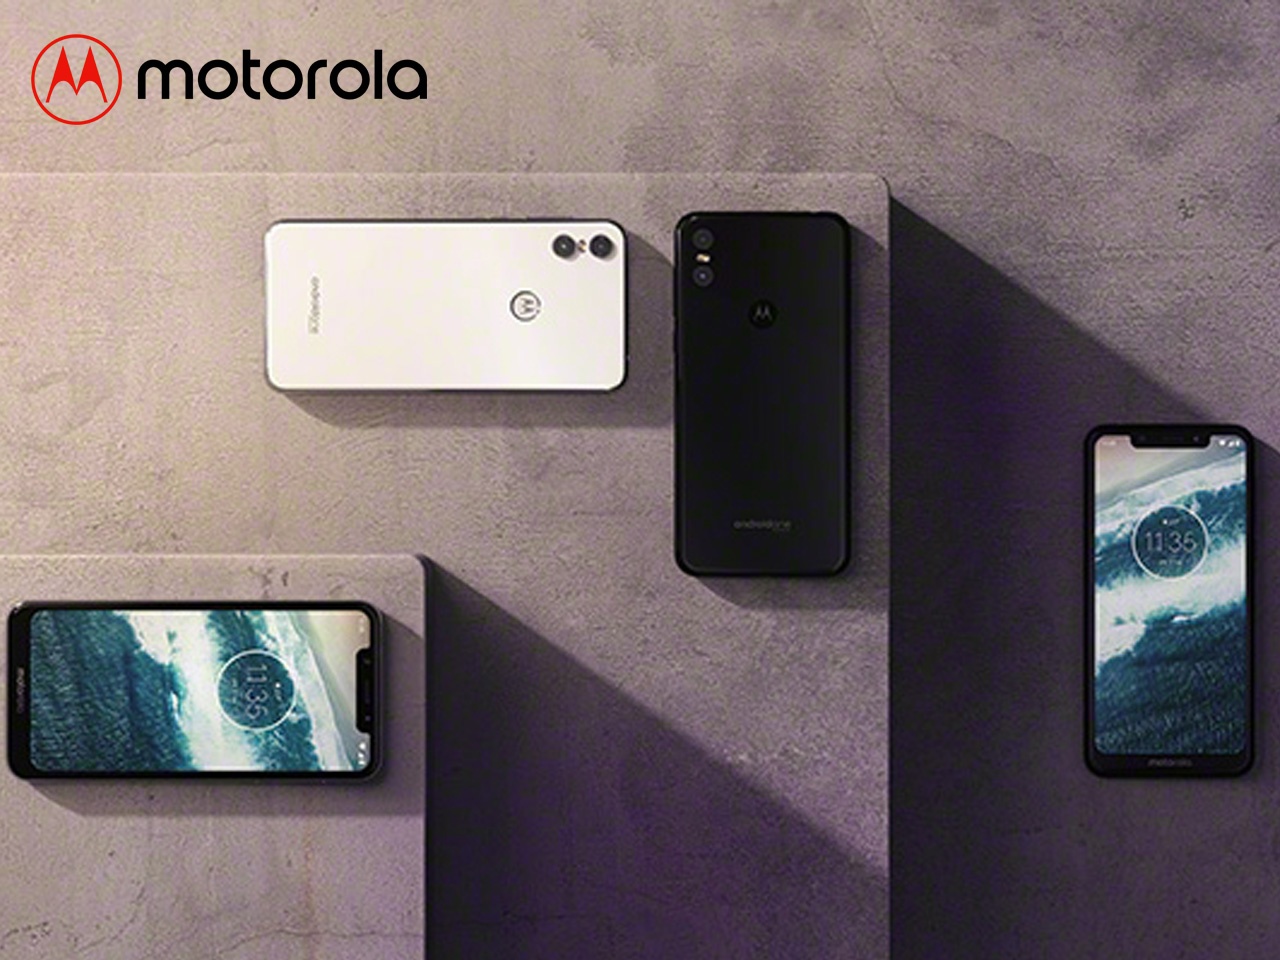 Le Motorola One, le nouveau Motorola disponible avec une remise de 50€